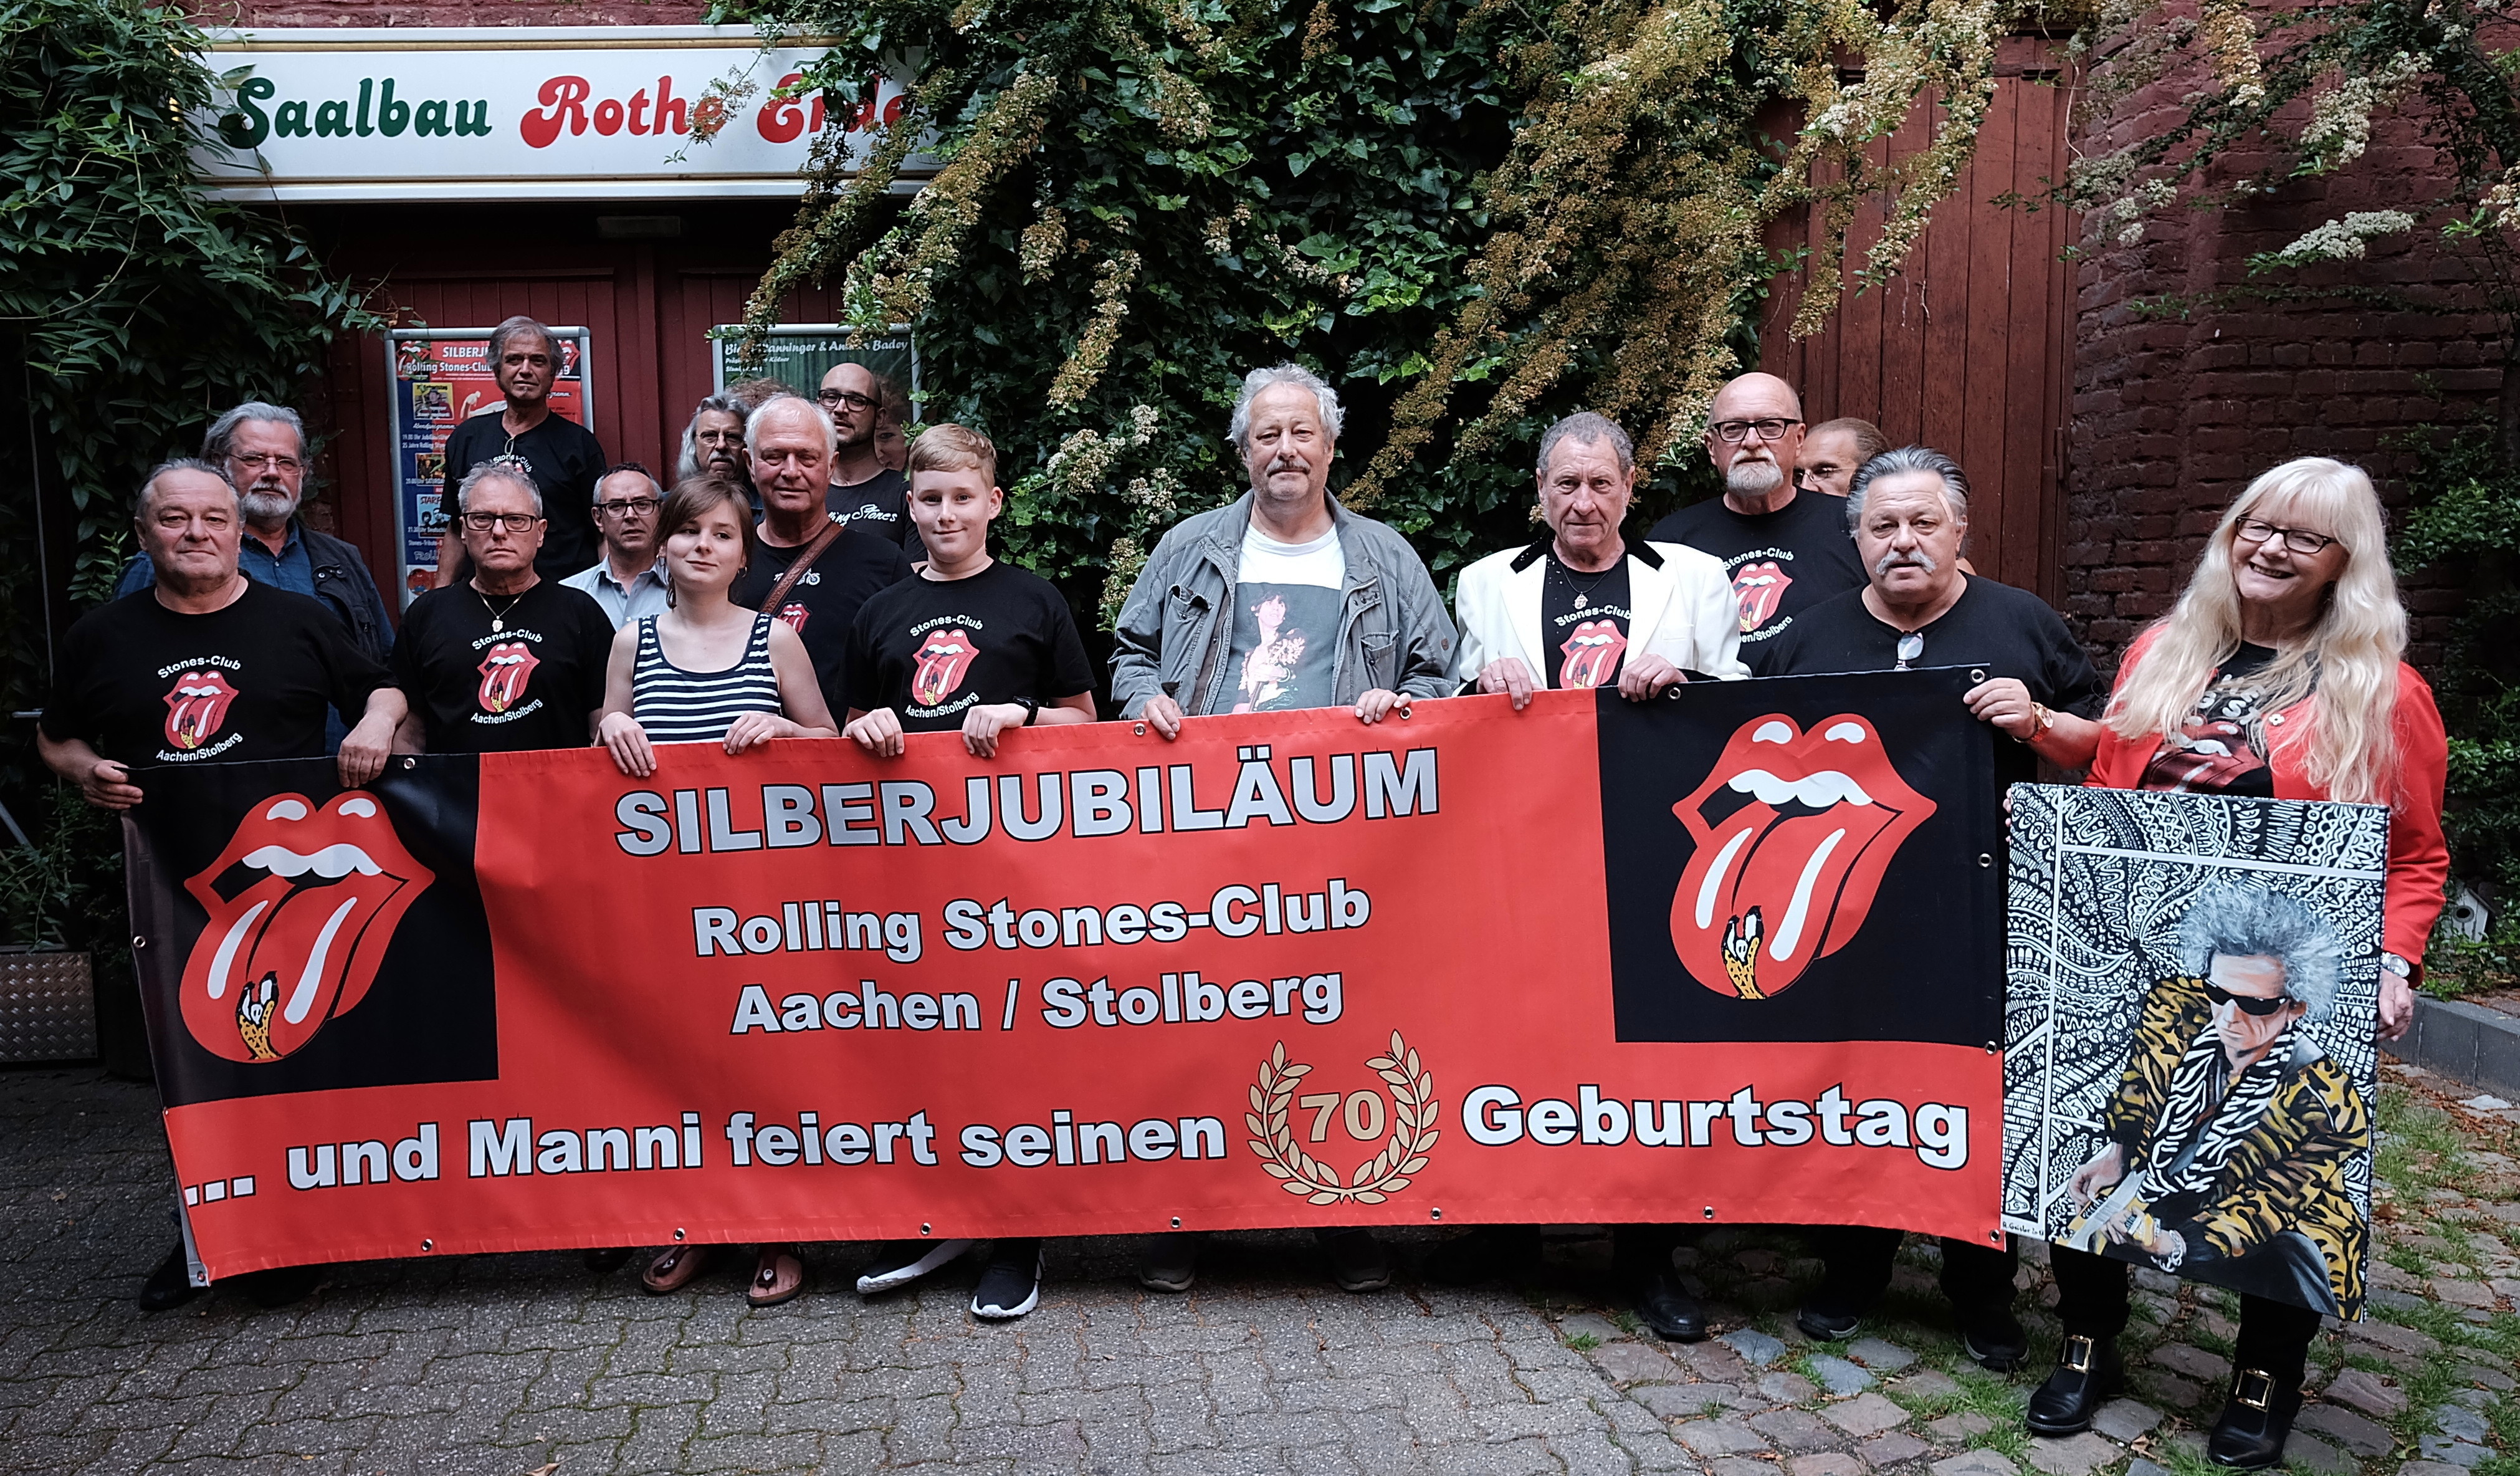 Bildergebnis für fotos vom silberjubiläum stones club